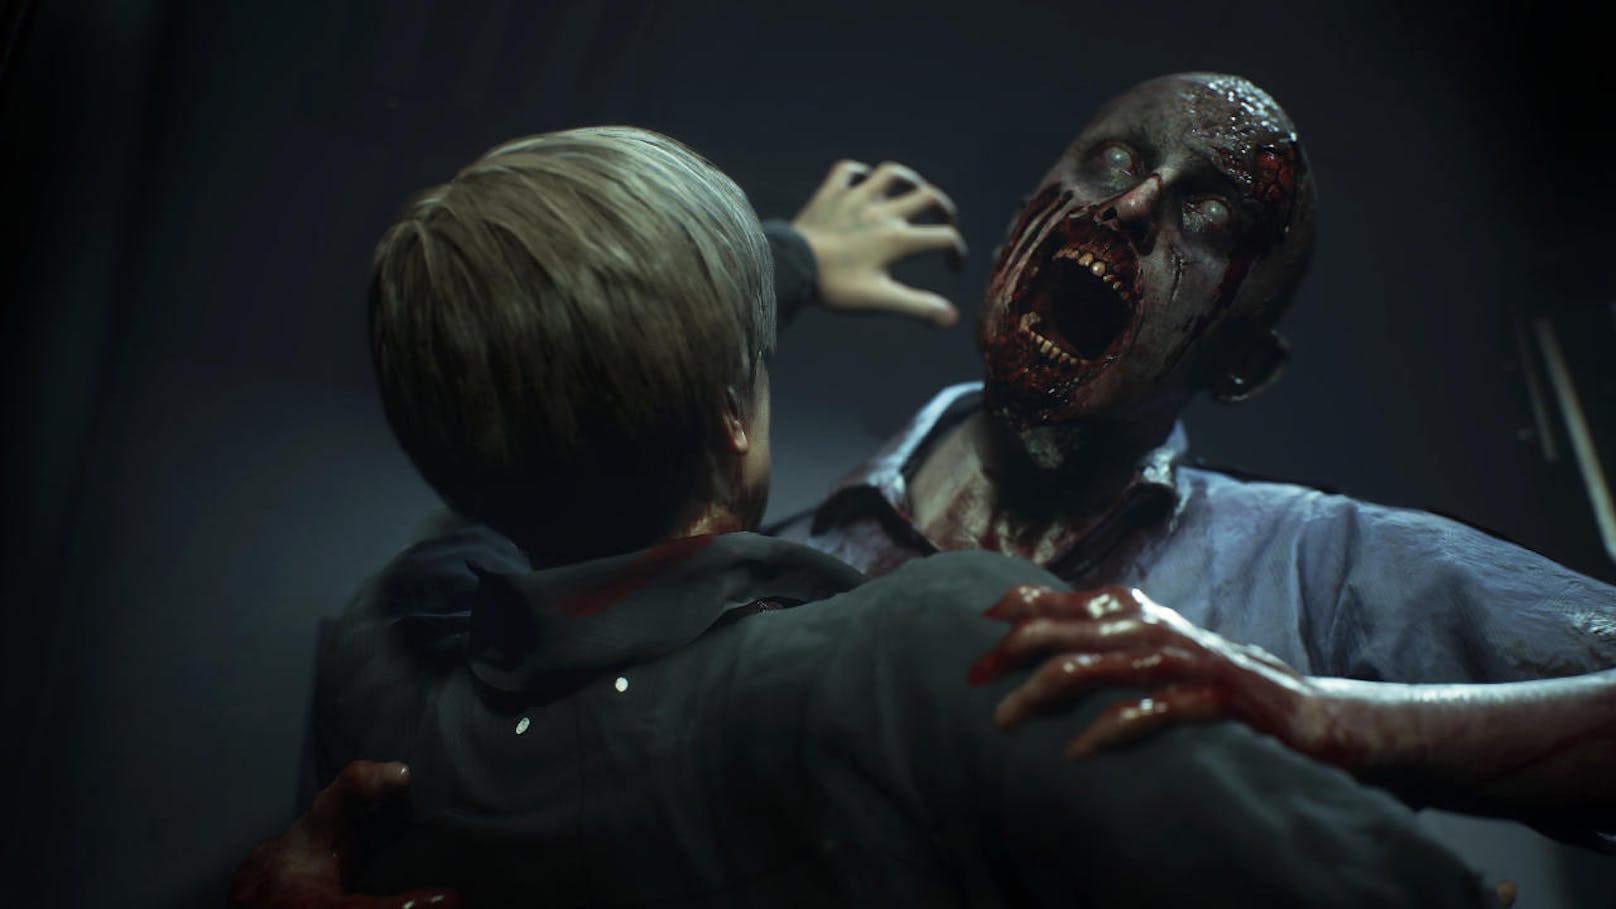 Extrem detailliert und scharf in 4K verbeißen sich Zombies in Figuren, an der Ekelfront hat man mit abgerissenen Gliedmaßen und blutig zugerichteten Körpern einiges zu verdauen und die grafische Nähe zu den Gegnern macht den Horror zu einem persönlichen Erlebnis.